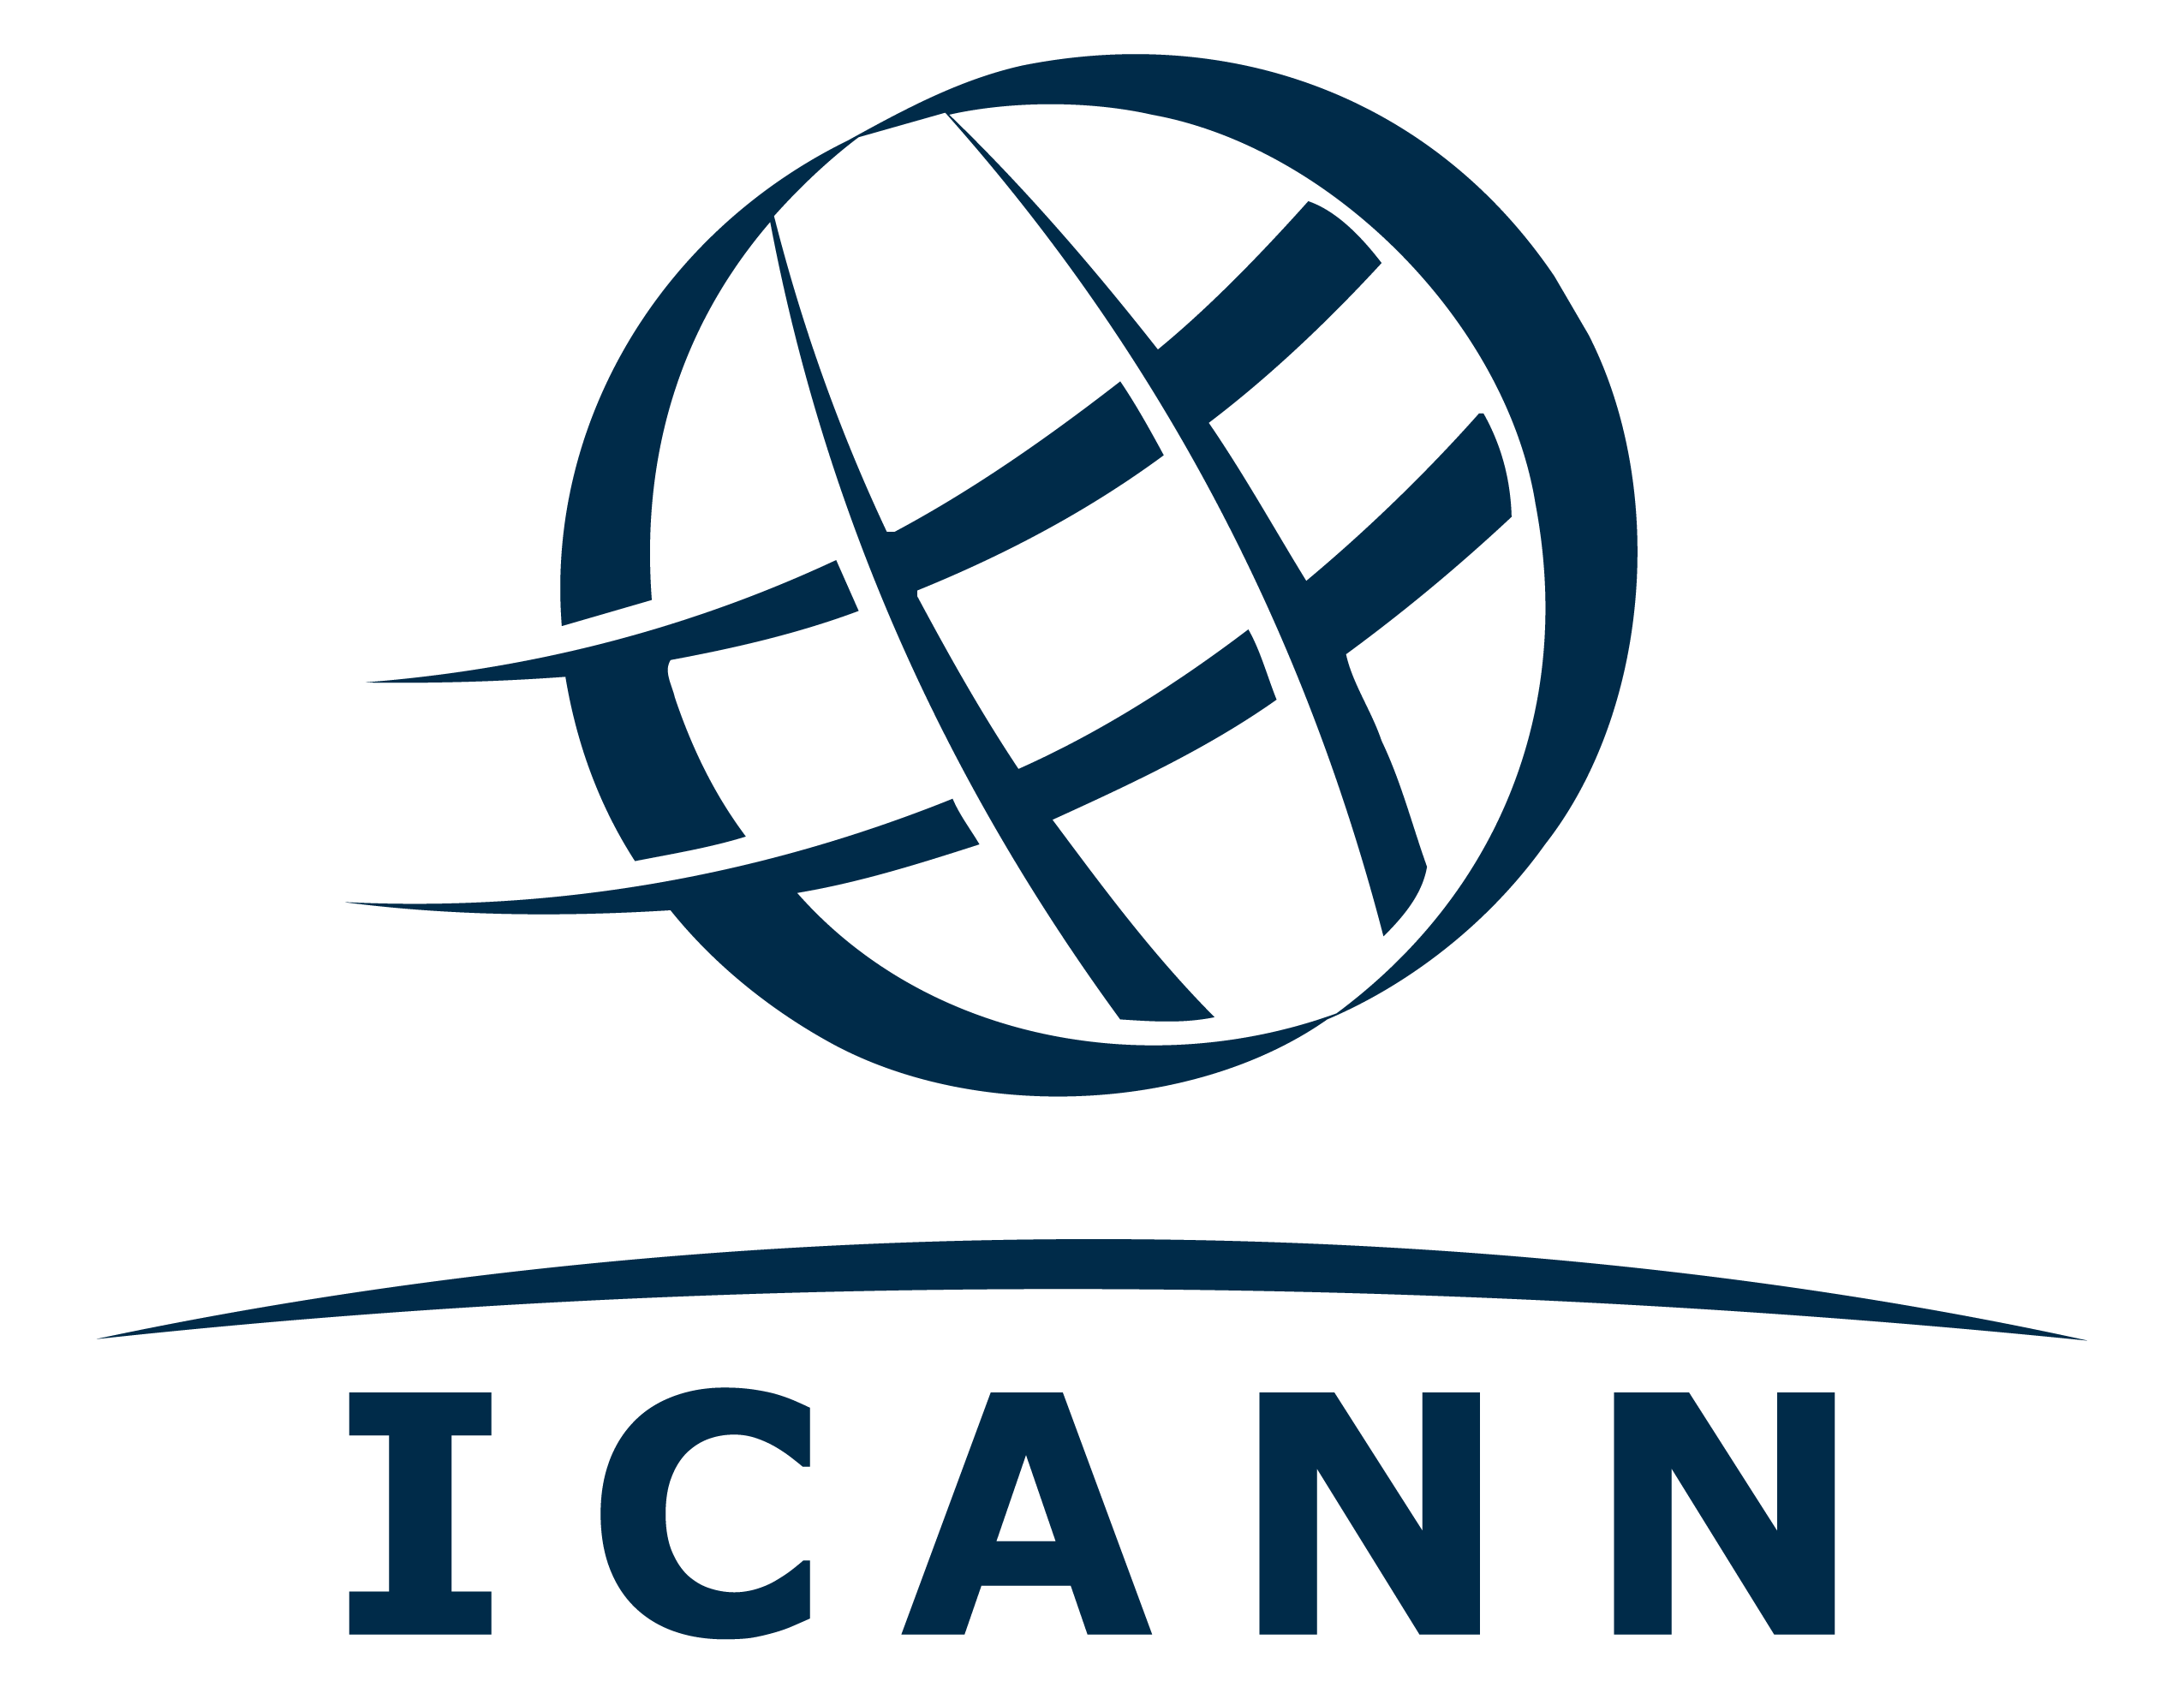 Résultats de recherche d'images pour « icann logo »